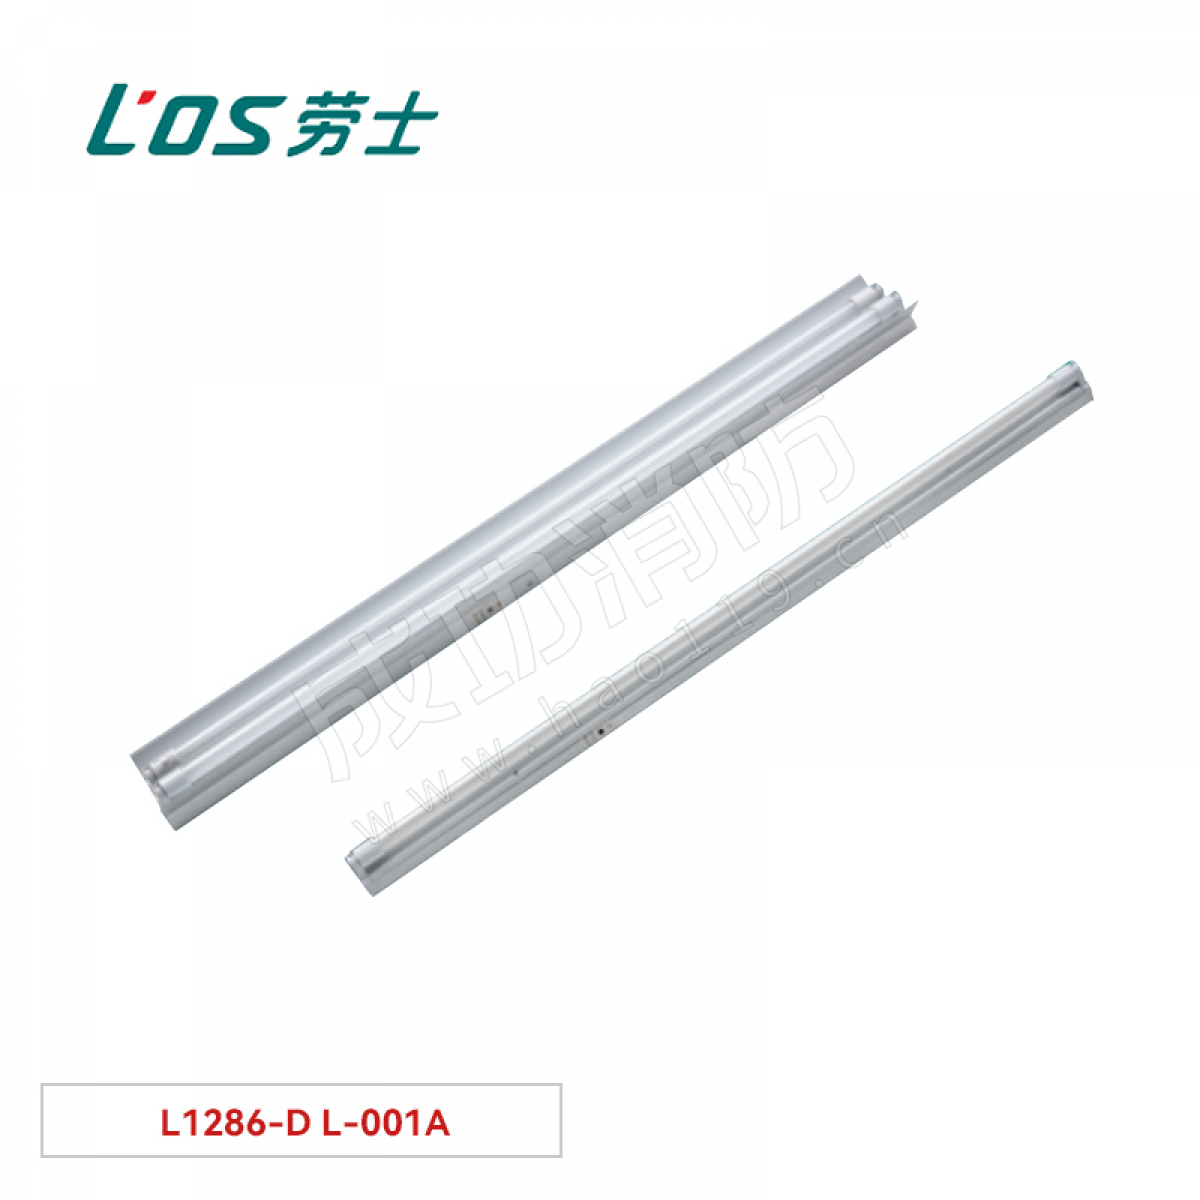 劳士 单管荧光灯(吊装式/墙装式) L1286-D L-001A